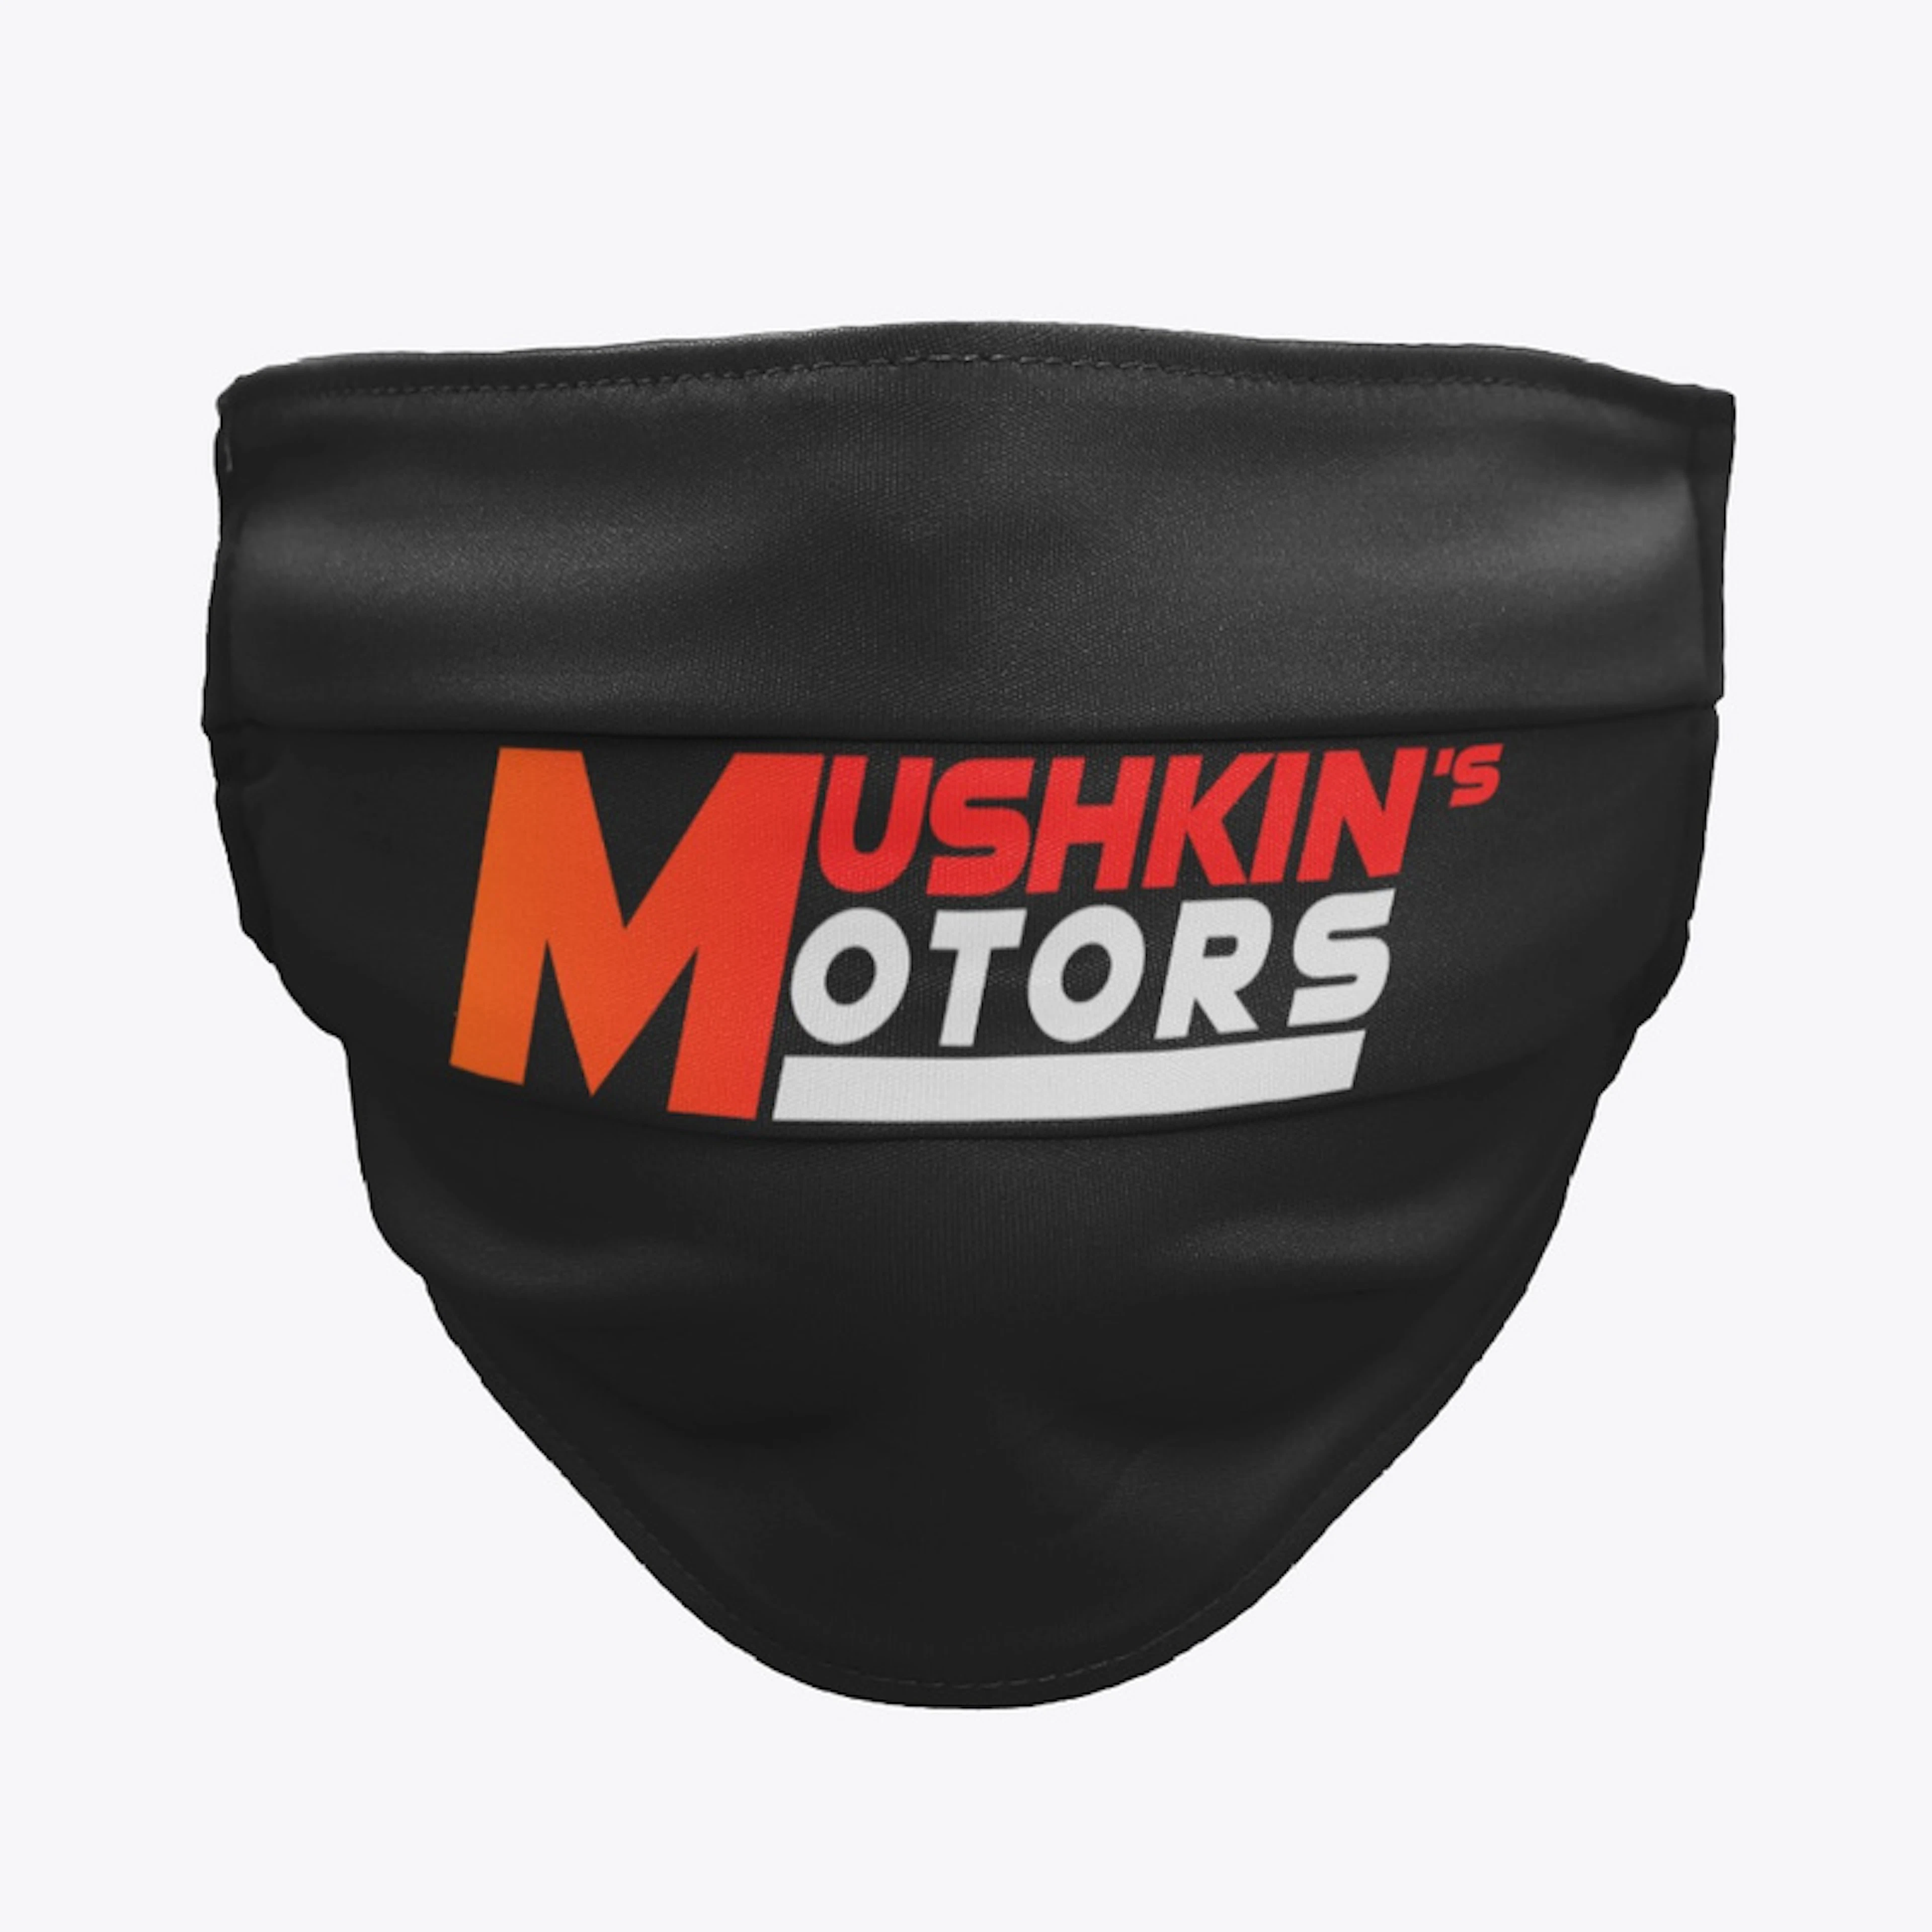 Mushkin's Motors line